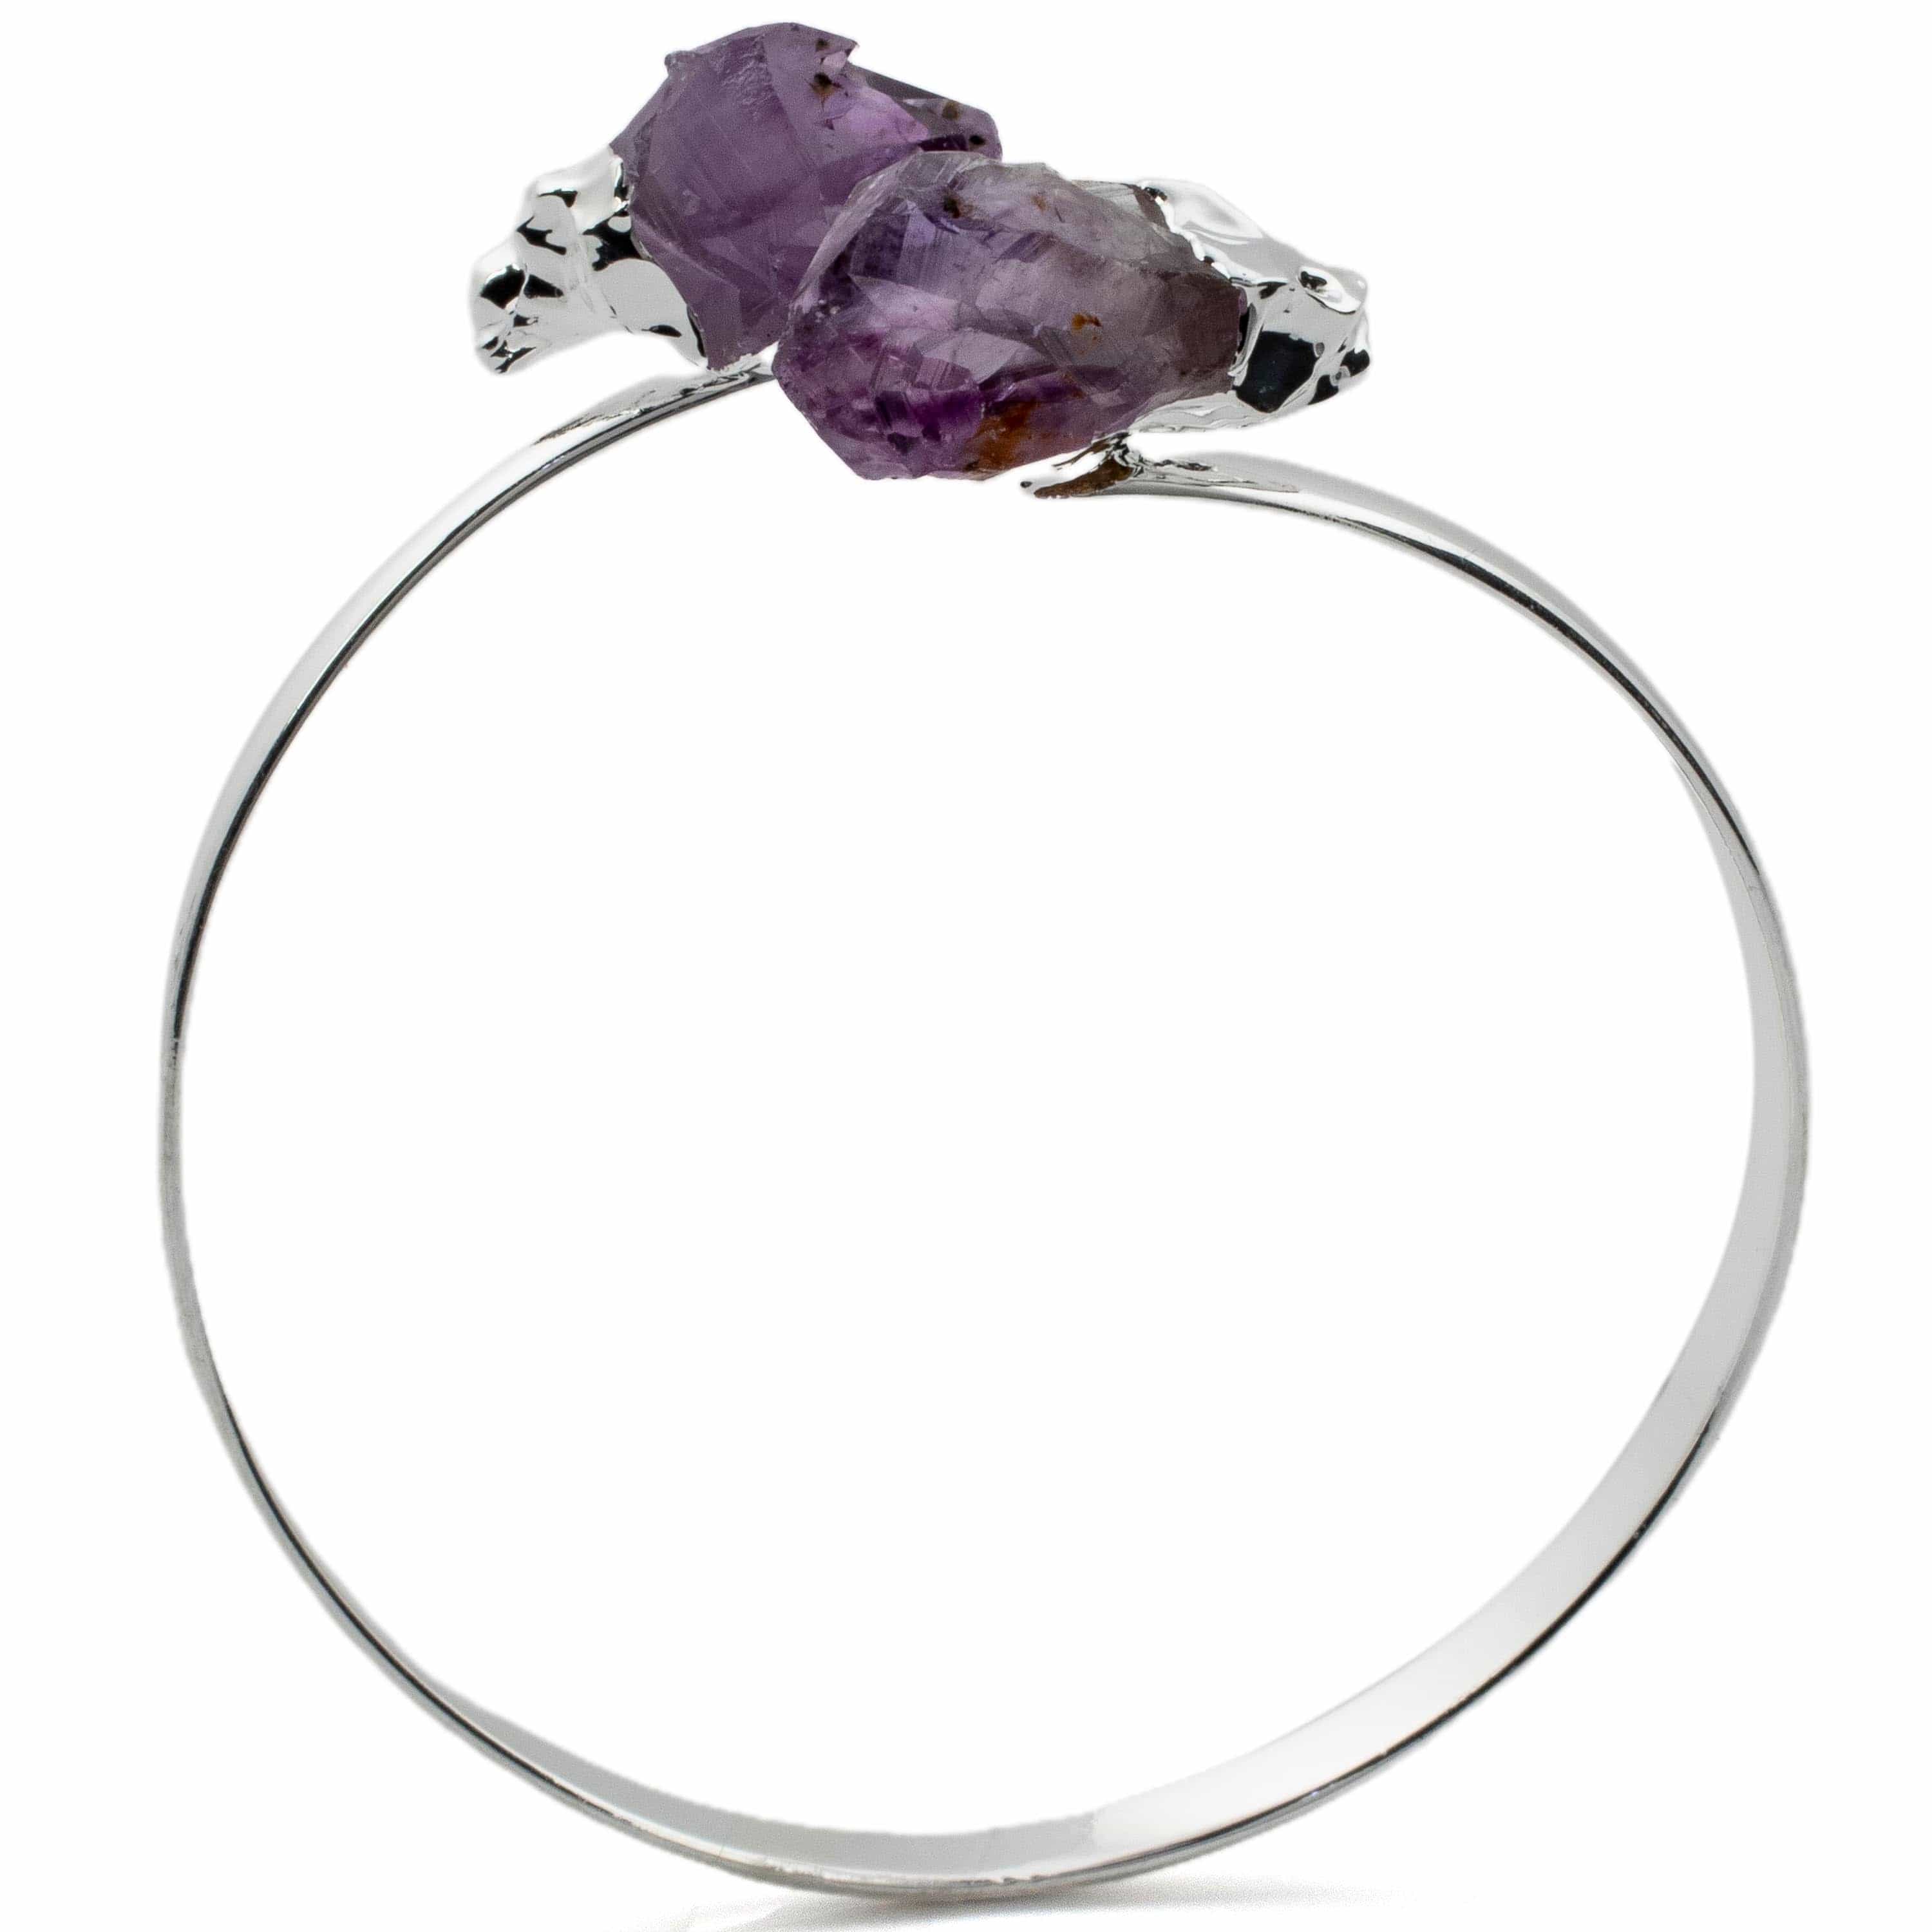 Kalifano Crystal Jewelry Amethyst Point Bracelet CJB-1016-AM